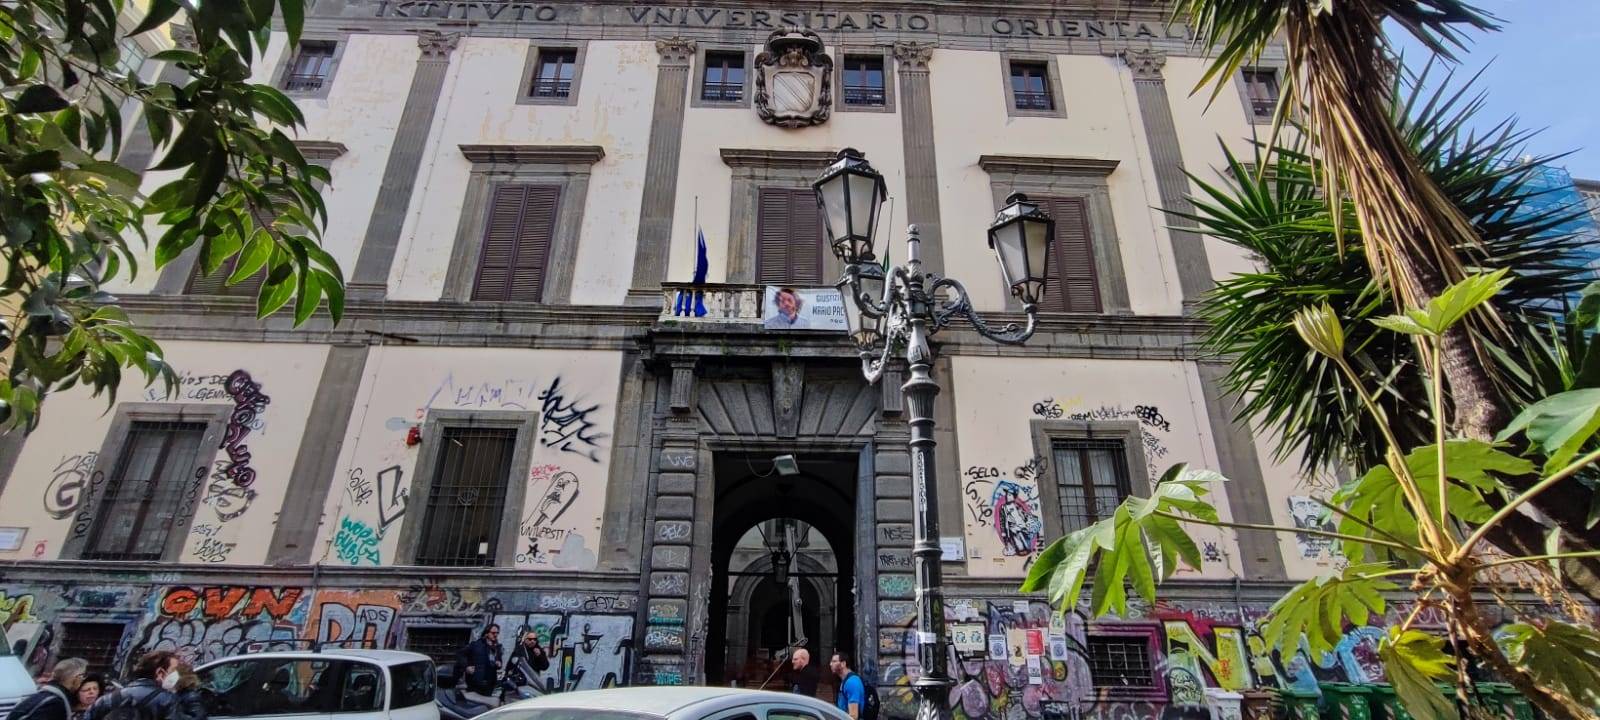 Negozio in vendita, Napoli centro storico